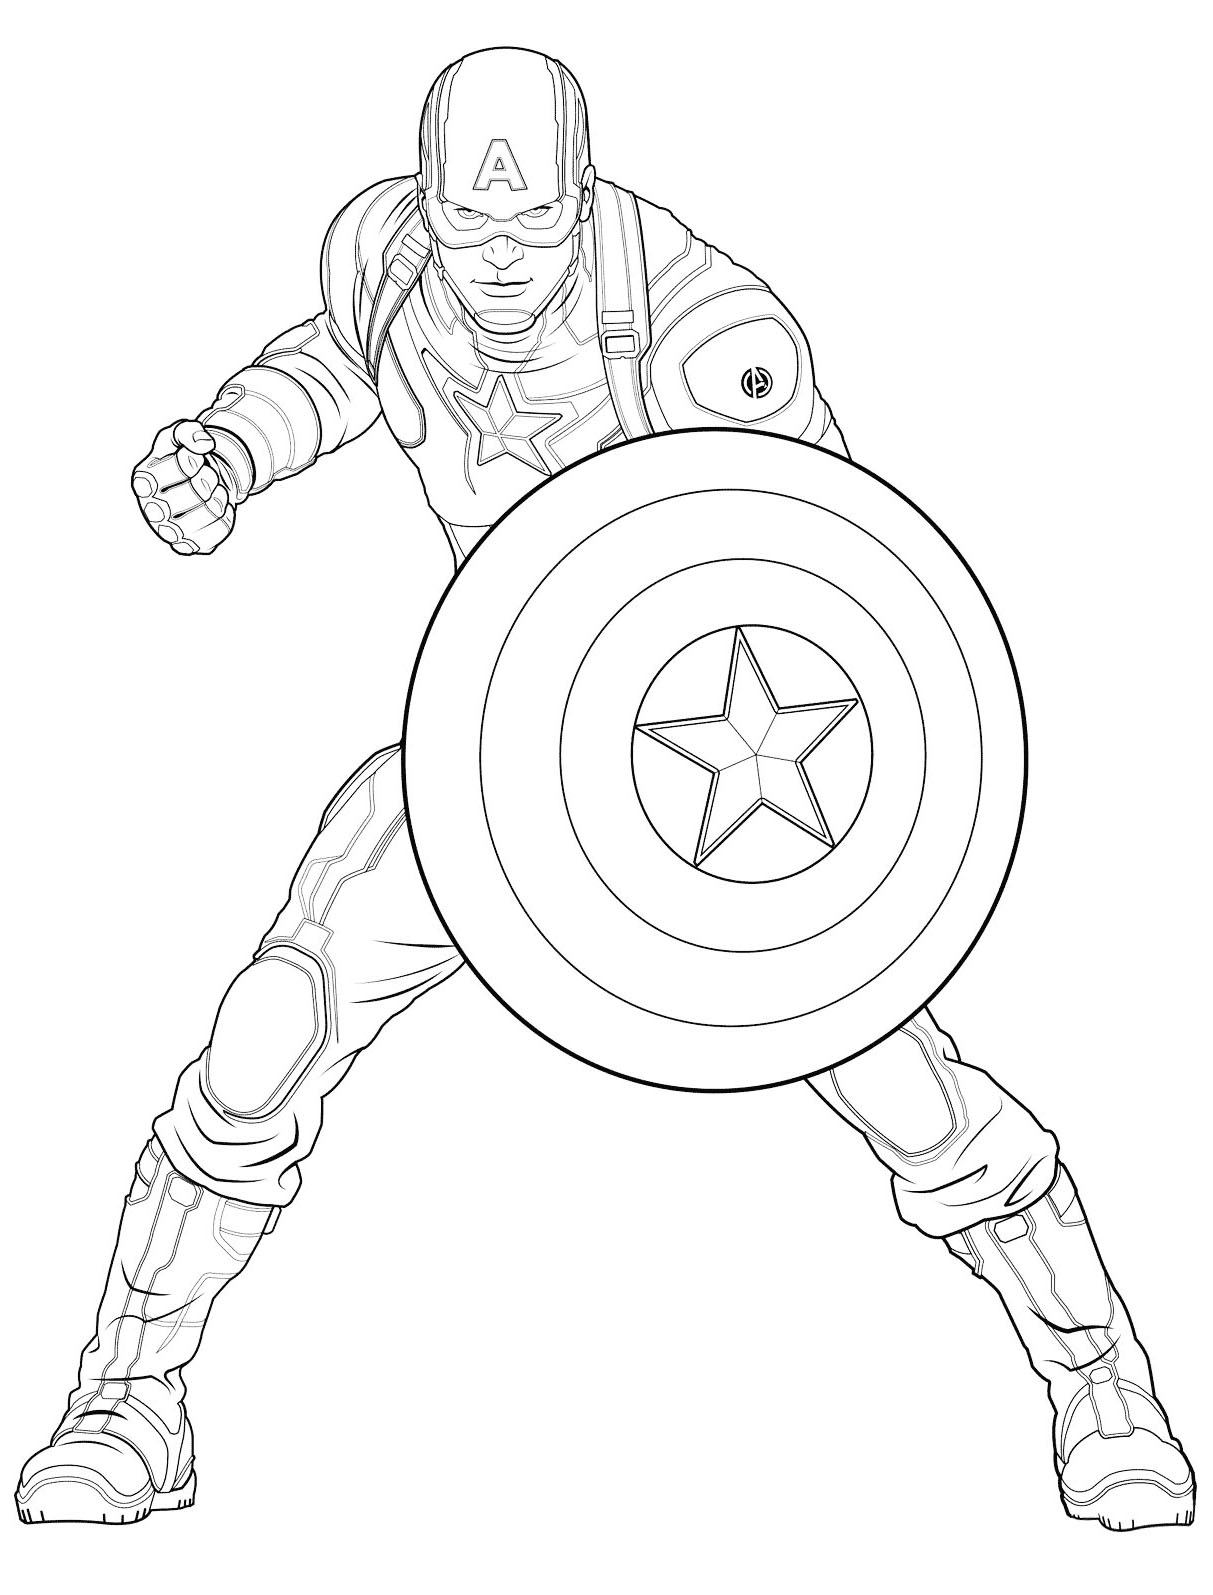 Image de Captain America à télécharger et imprimer pour enfants